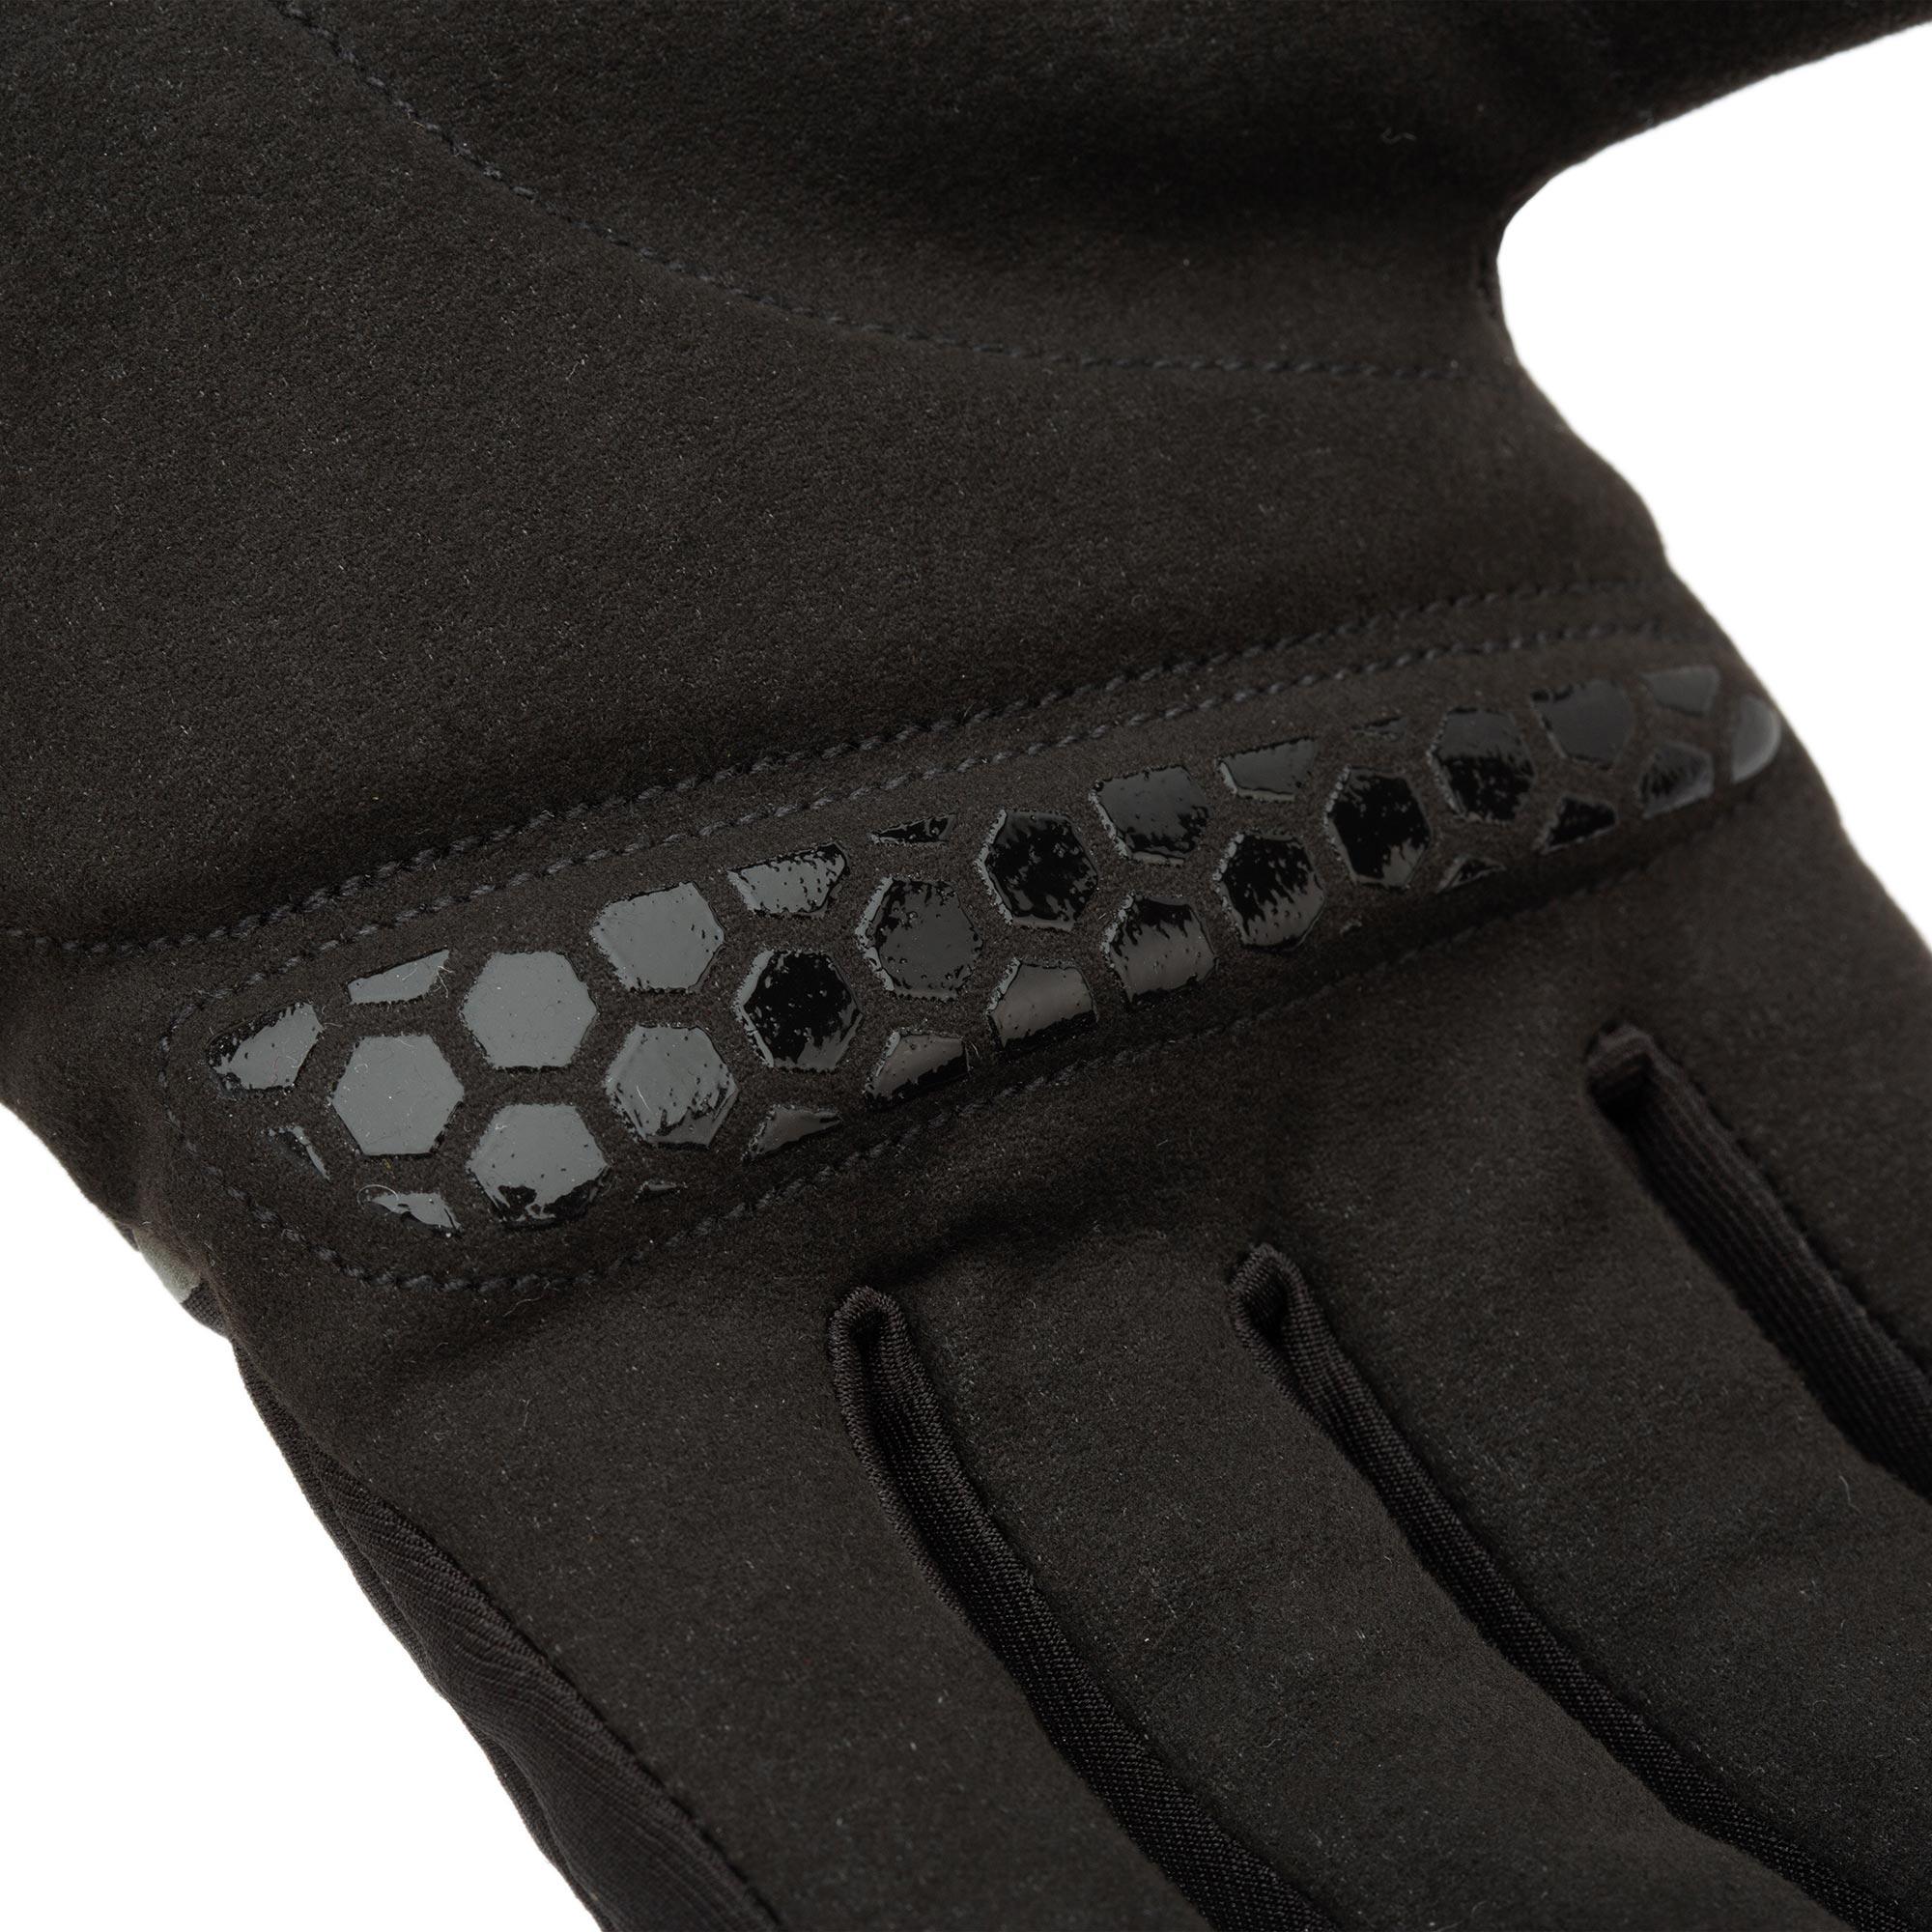 Sass Pro Gloves Black Tucano Urbano